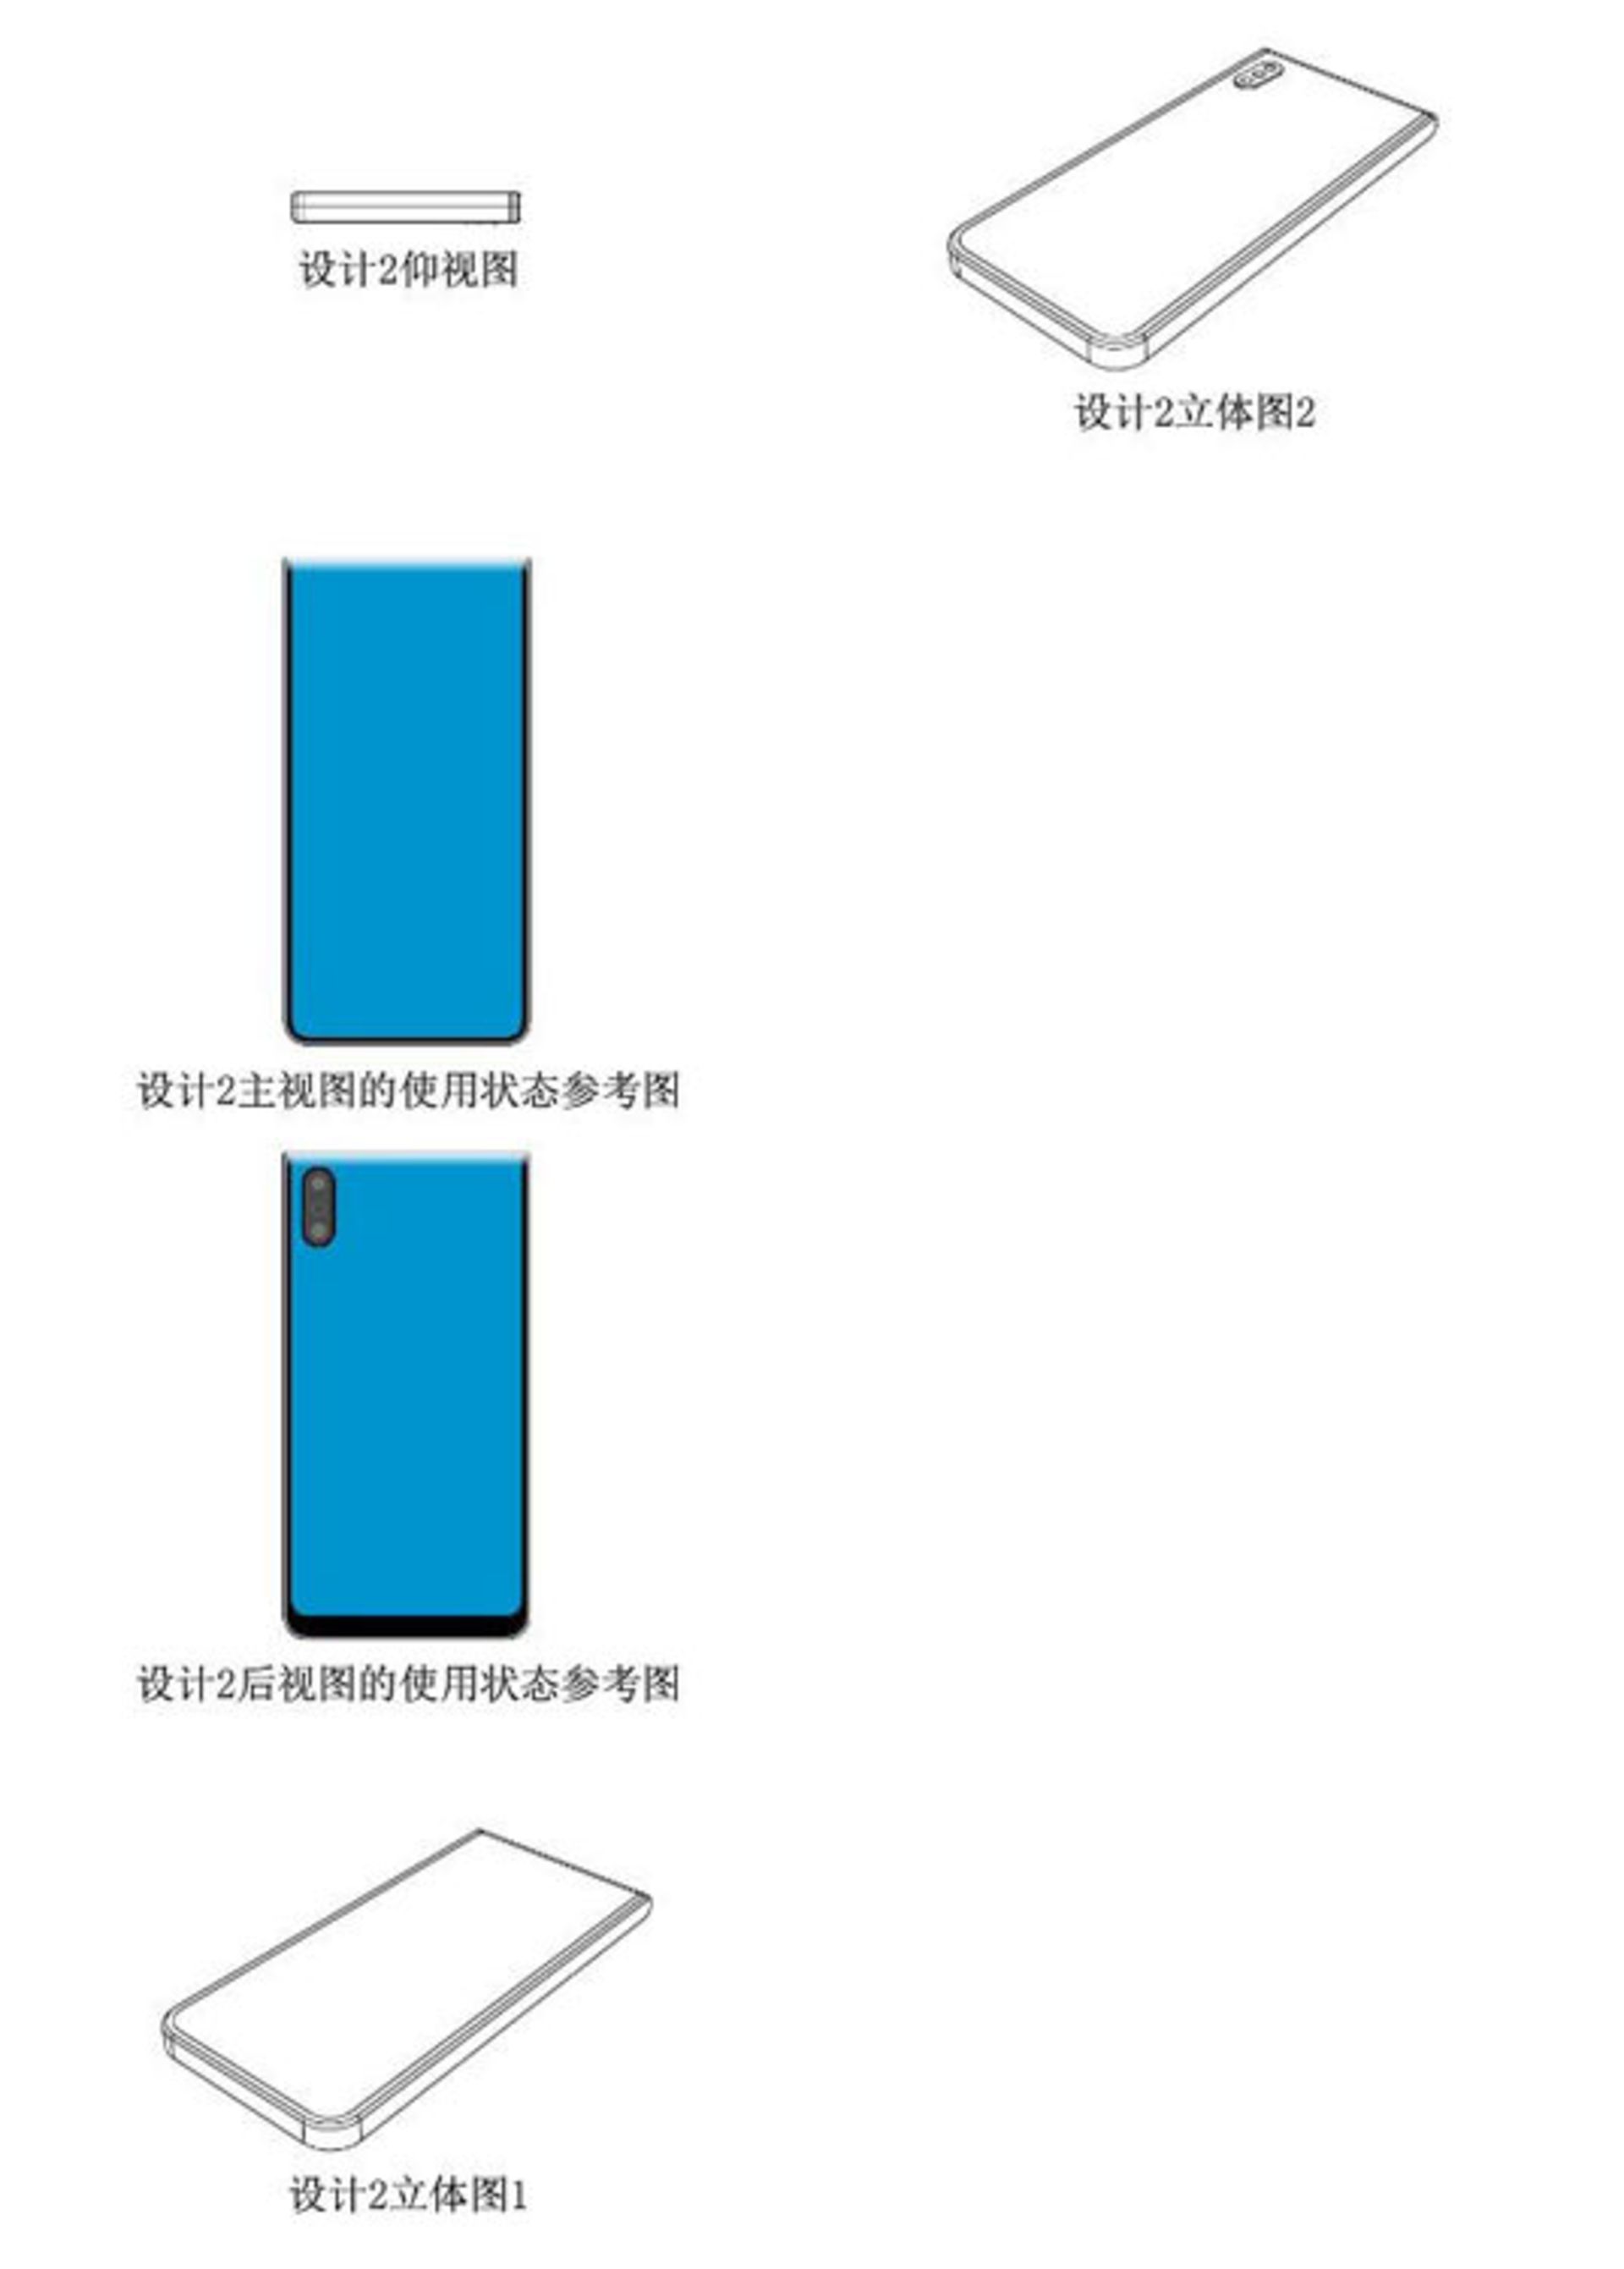 پتنت های شیائومی برای دستگاه با سه صفحه نمایش